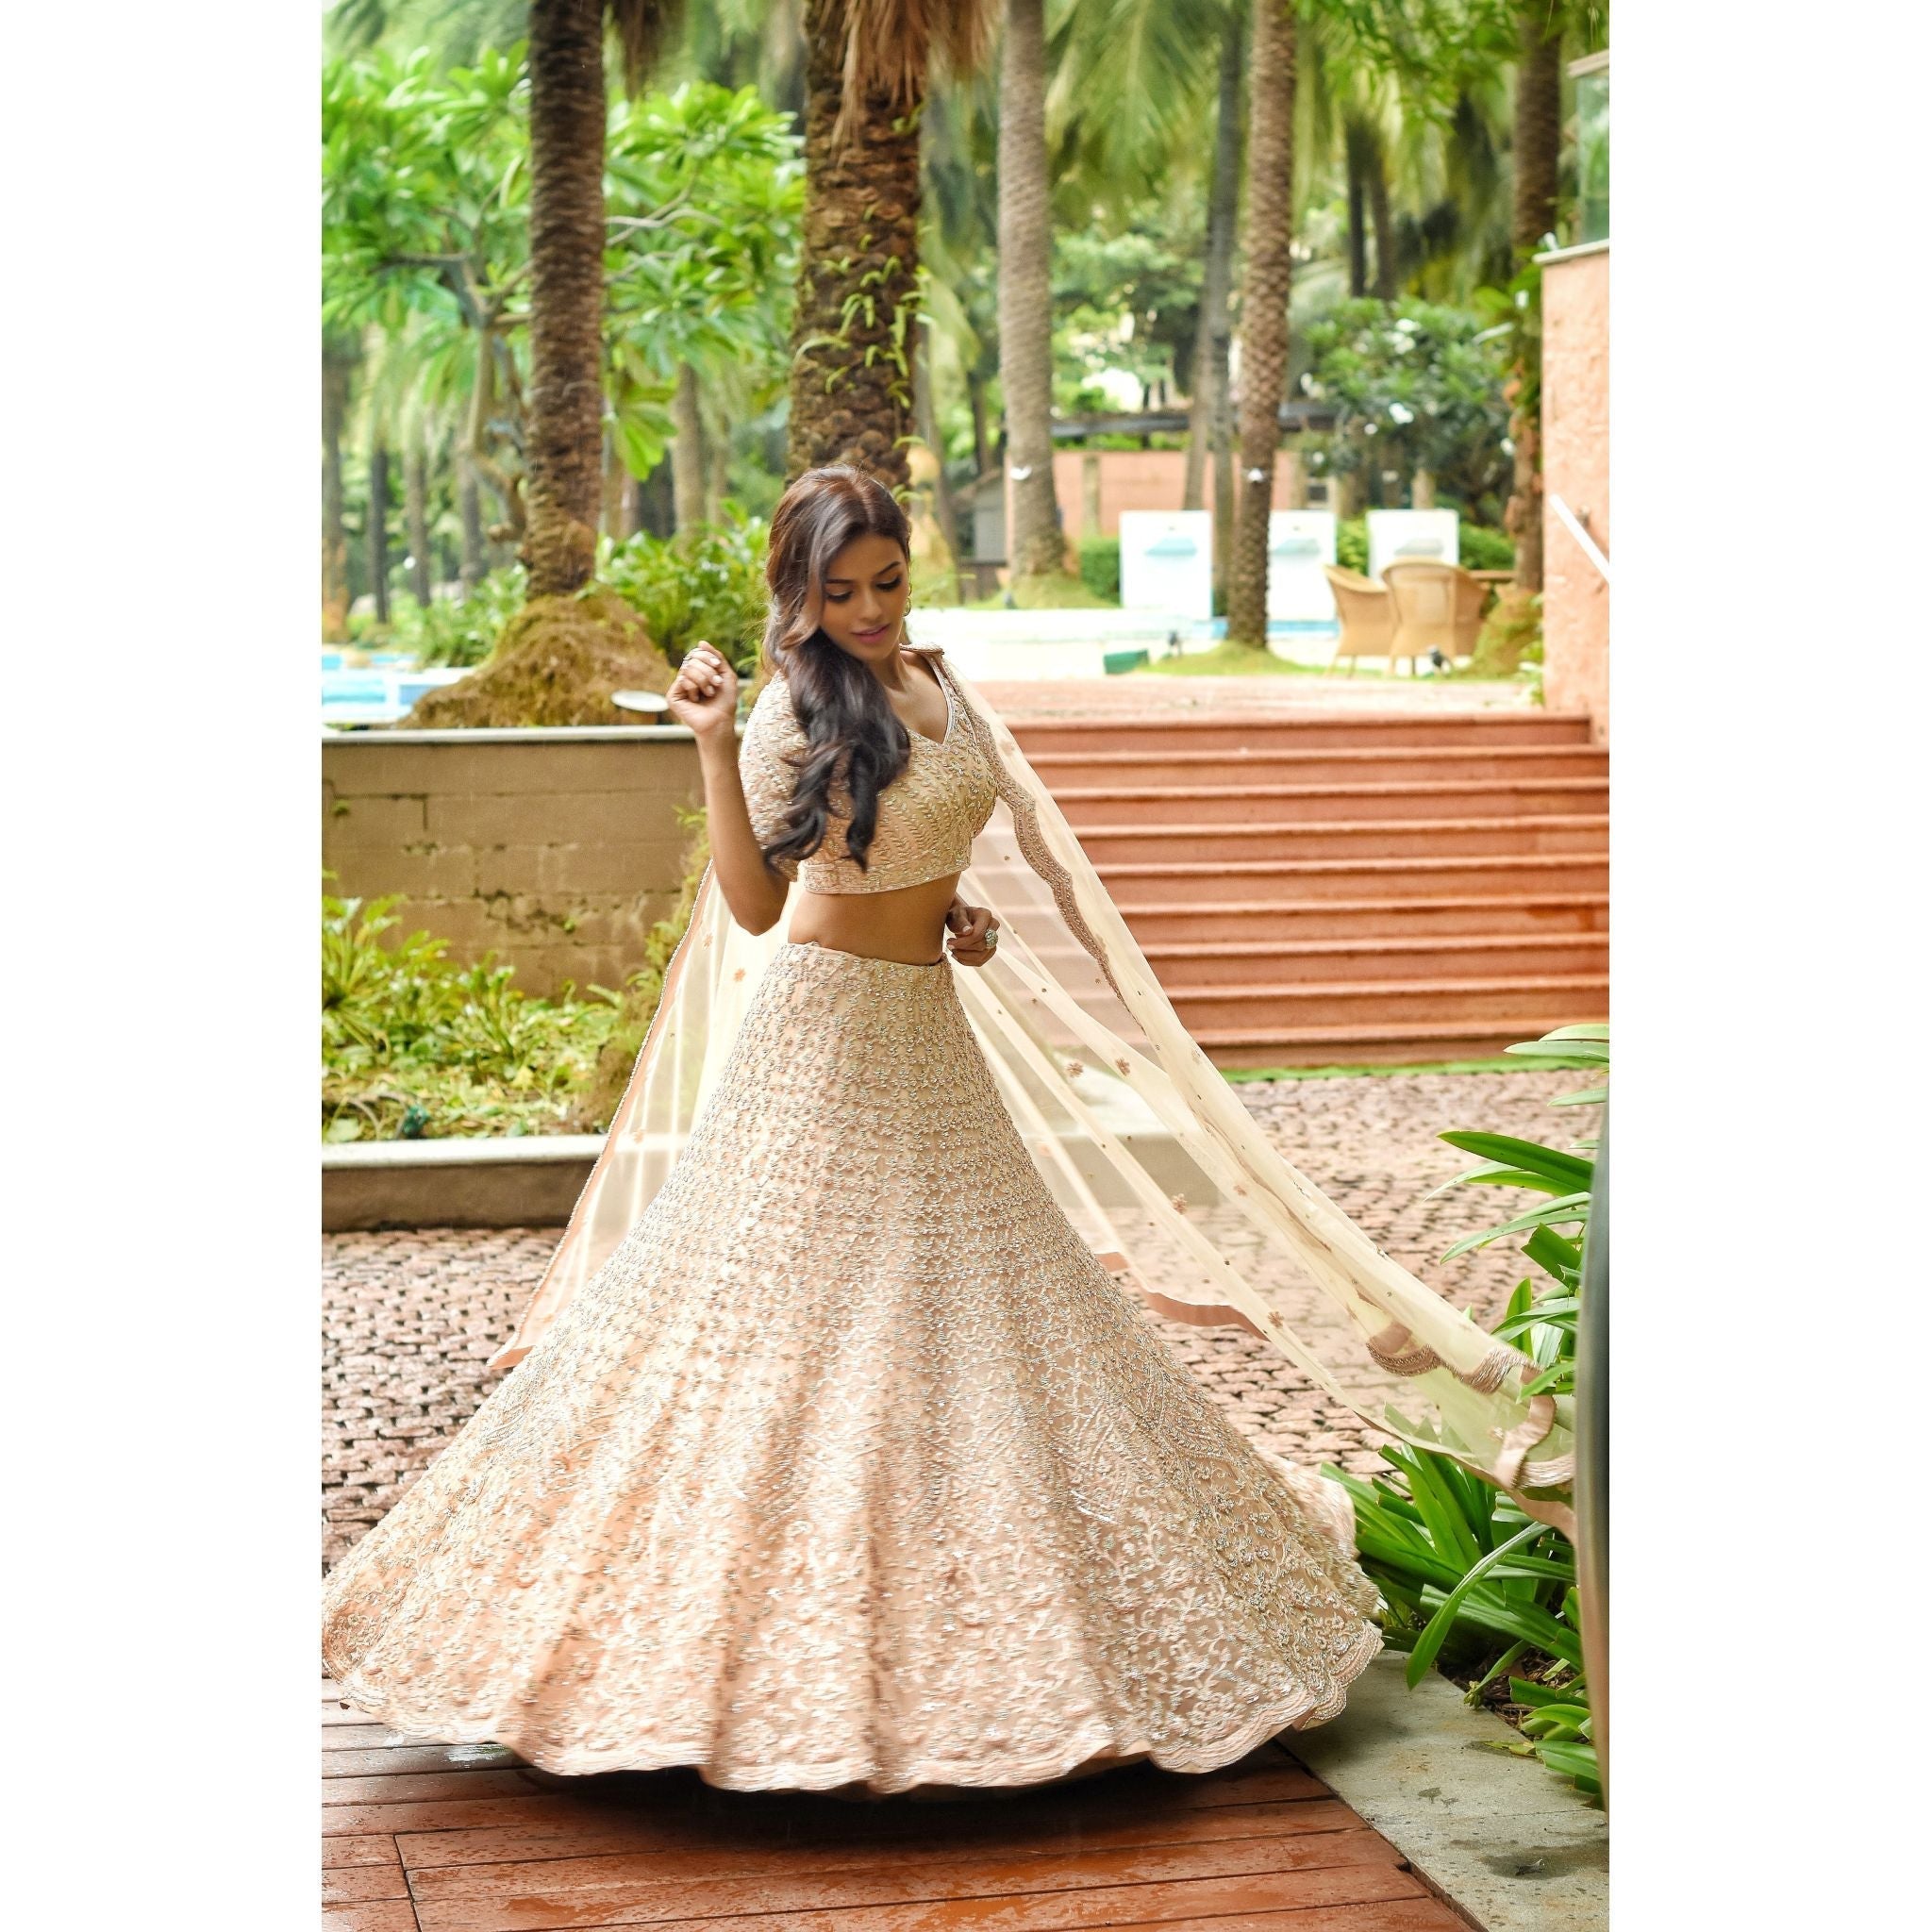 Blush Sequined Lehenga Set - Indian Designer Bridal Wedding Outfit